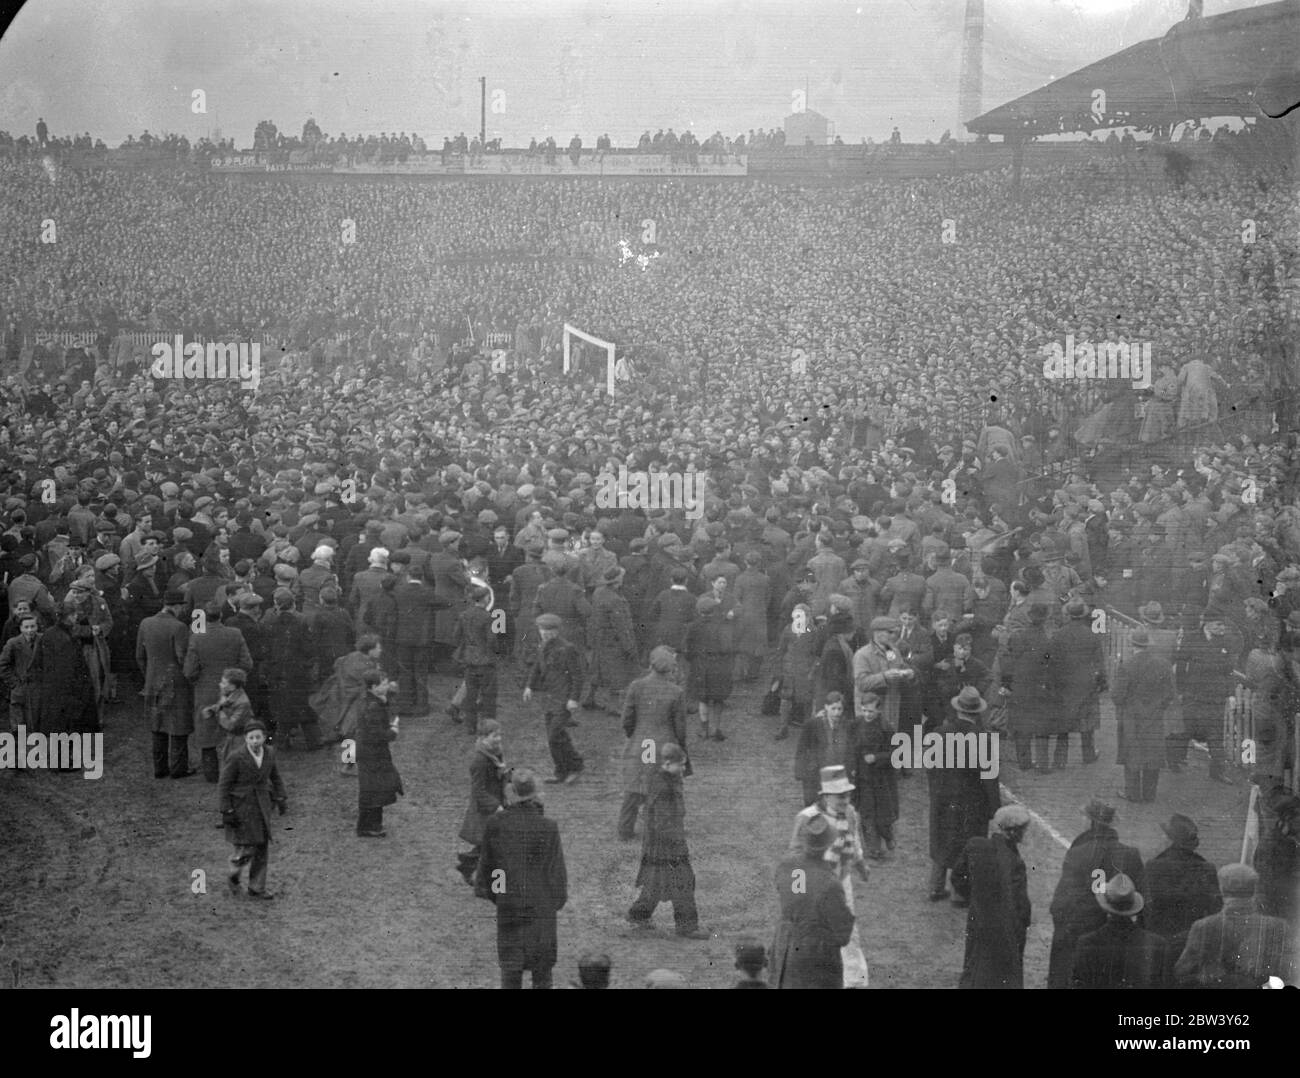 Millwall Spieler fliehen, wie Tausende Feld nach Cup Unentschieden Sieg eindringen. Millwall Spieler mussten vom Spielfeld fliehen, als Tausende ihrer überfreudeten Fans nach dem 2 - 0 Sieg des Teams über Manchester City in der sechsten Runde des F A Cup in "The Den", New Cross auf das Feld aufstiegen. Bald war das ganze Feld mit Tausenden von Menschen eingeklemmt. Foto zeigt, der Platz mit Menschen bedeckt, nachdem er Spiel. März 1937 Stockfoto